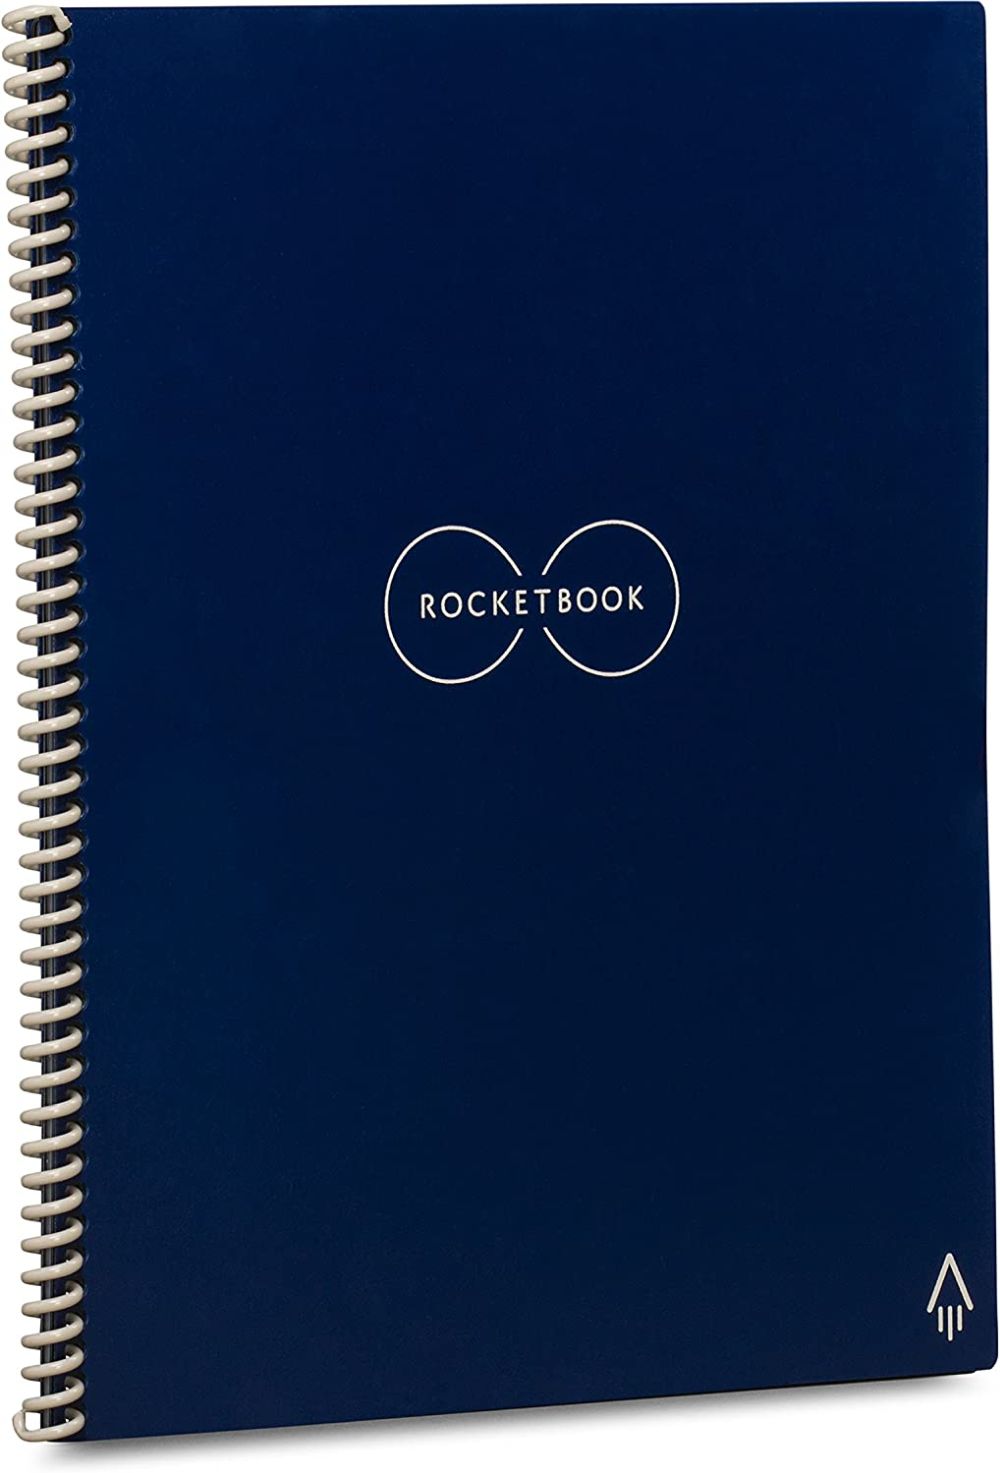 Rocketbook smart reusable notebook